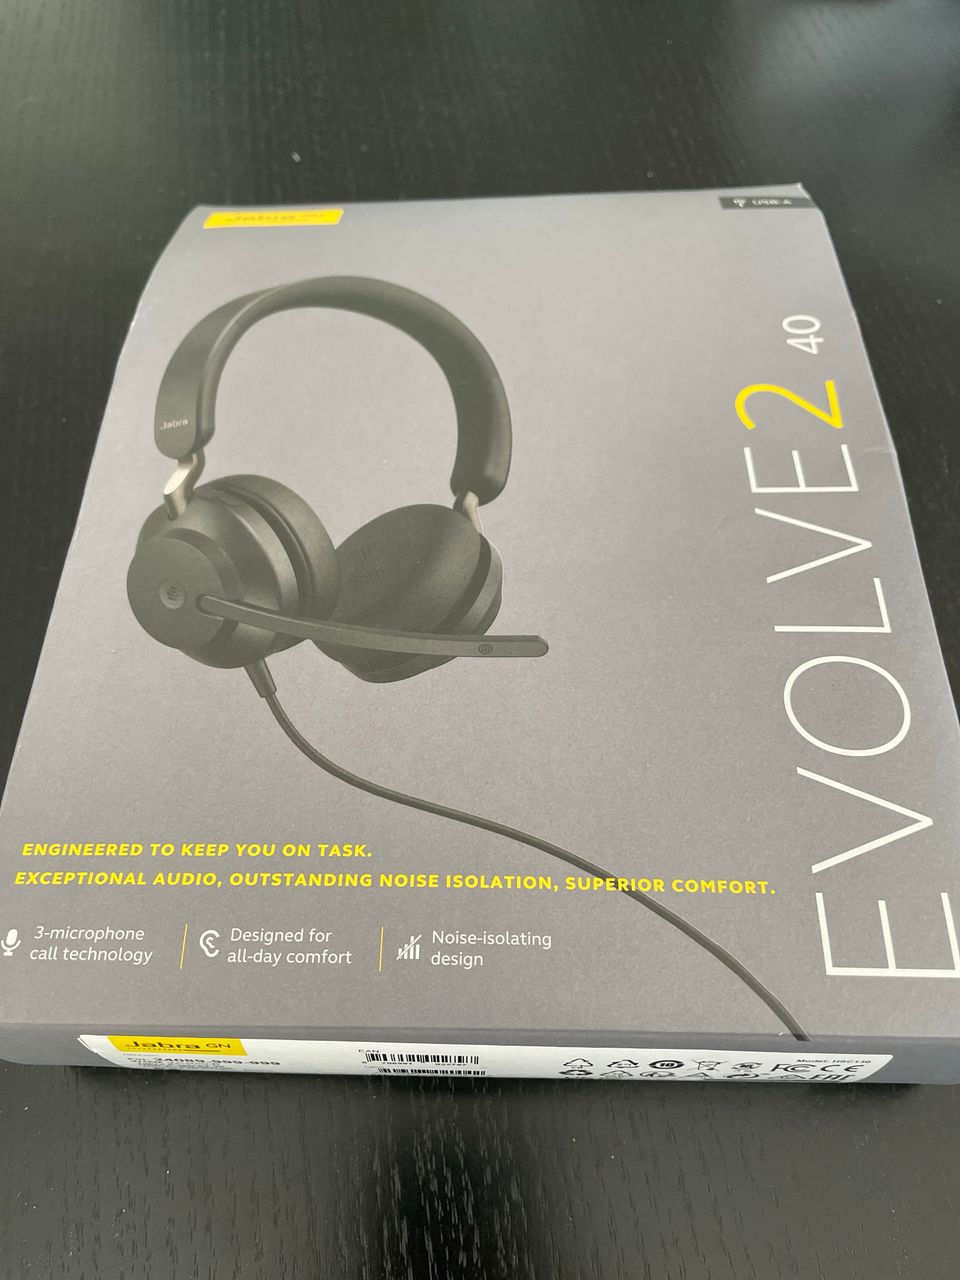 Uudet Jabra Evolve2 kuulokkeet